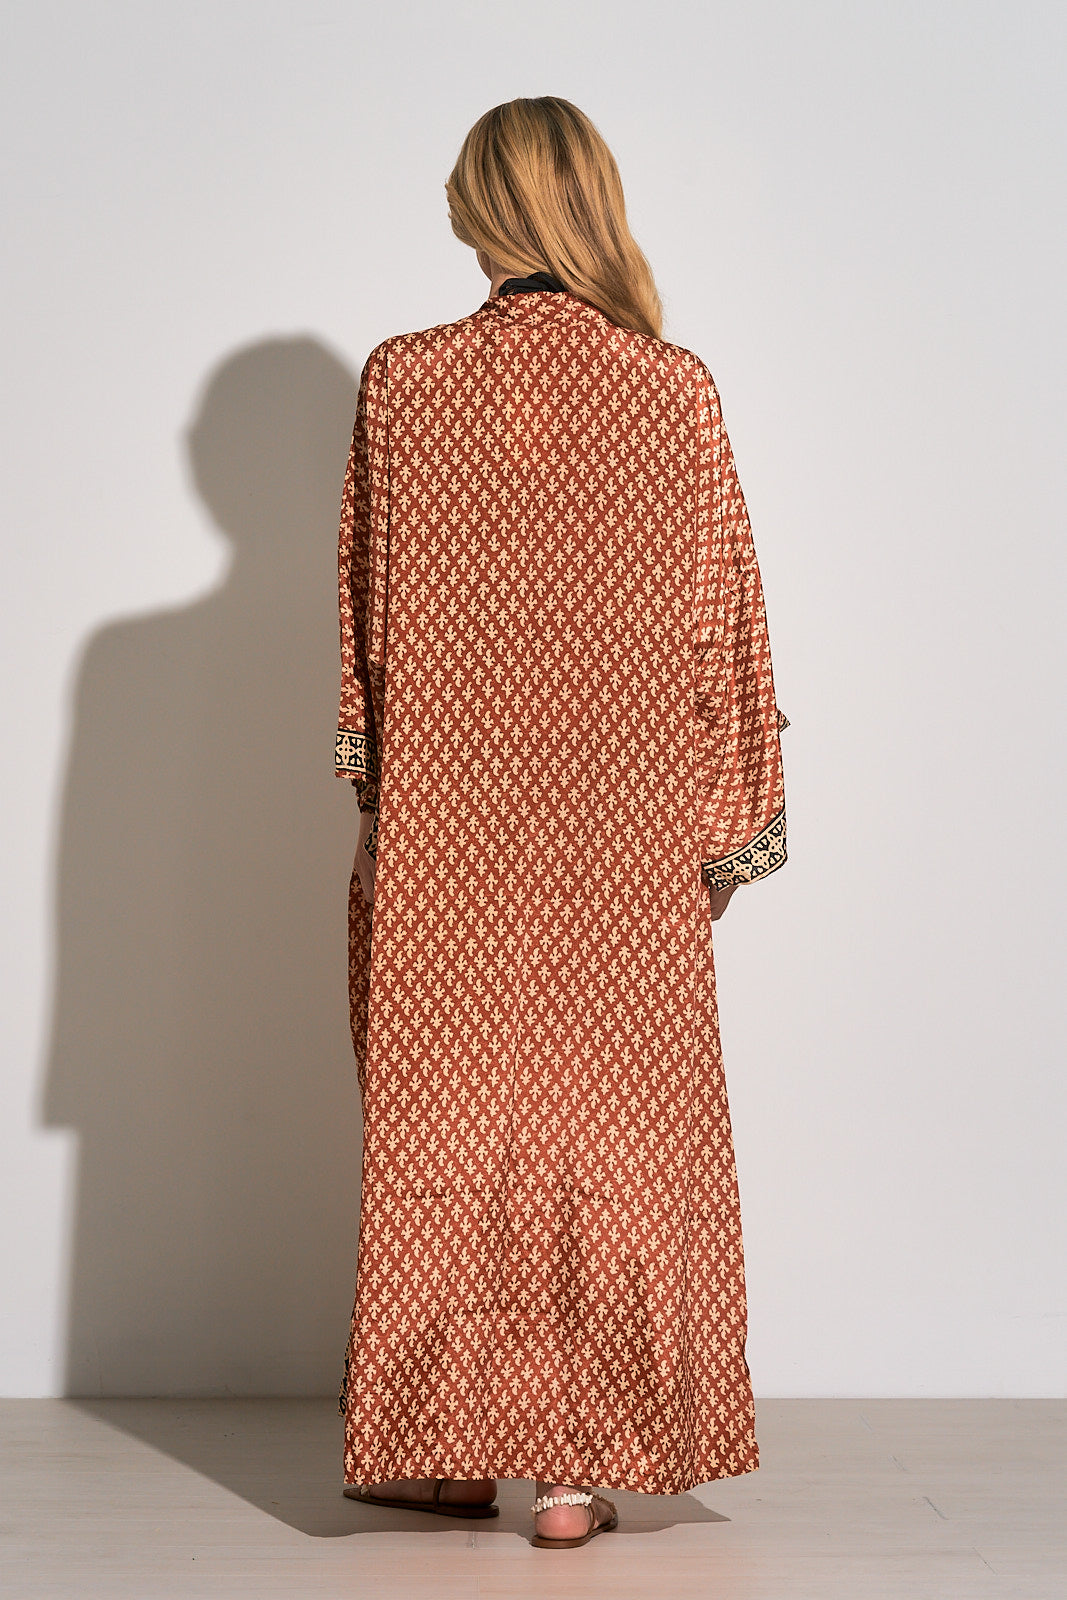 Elan Brick Casablanca Long Kimono